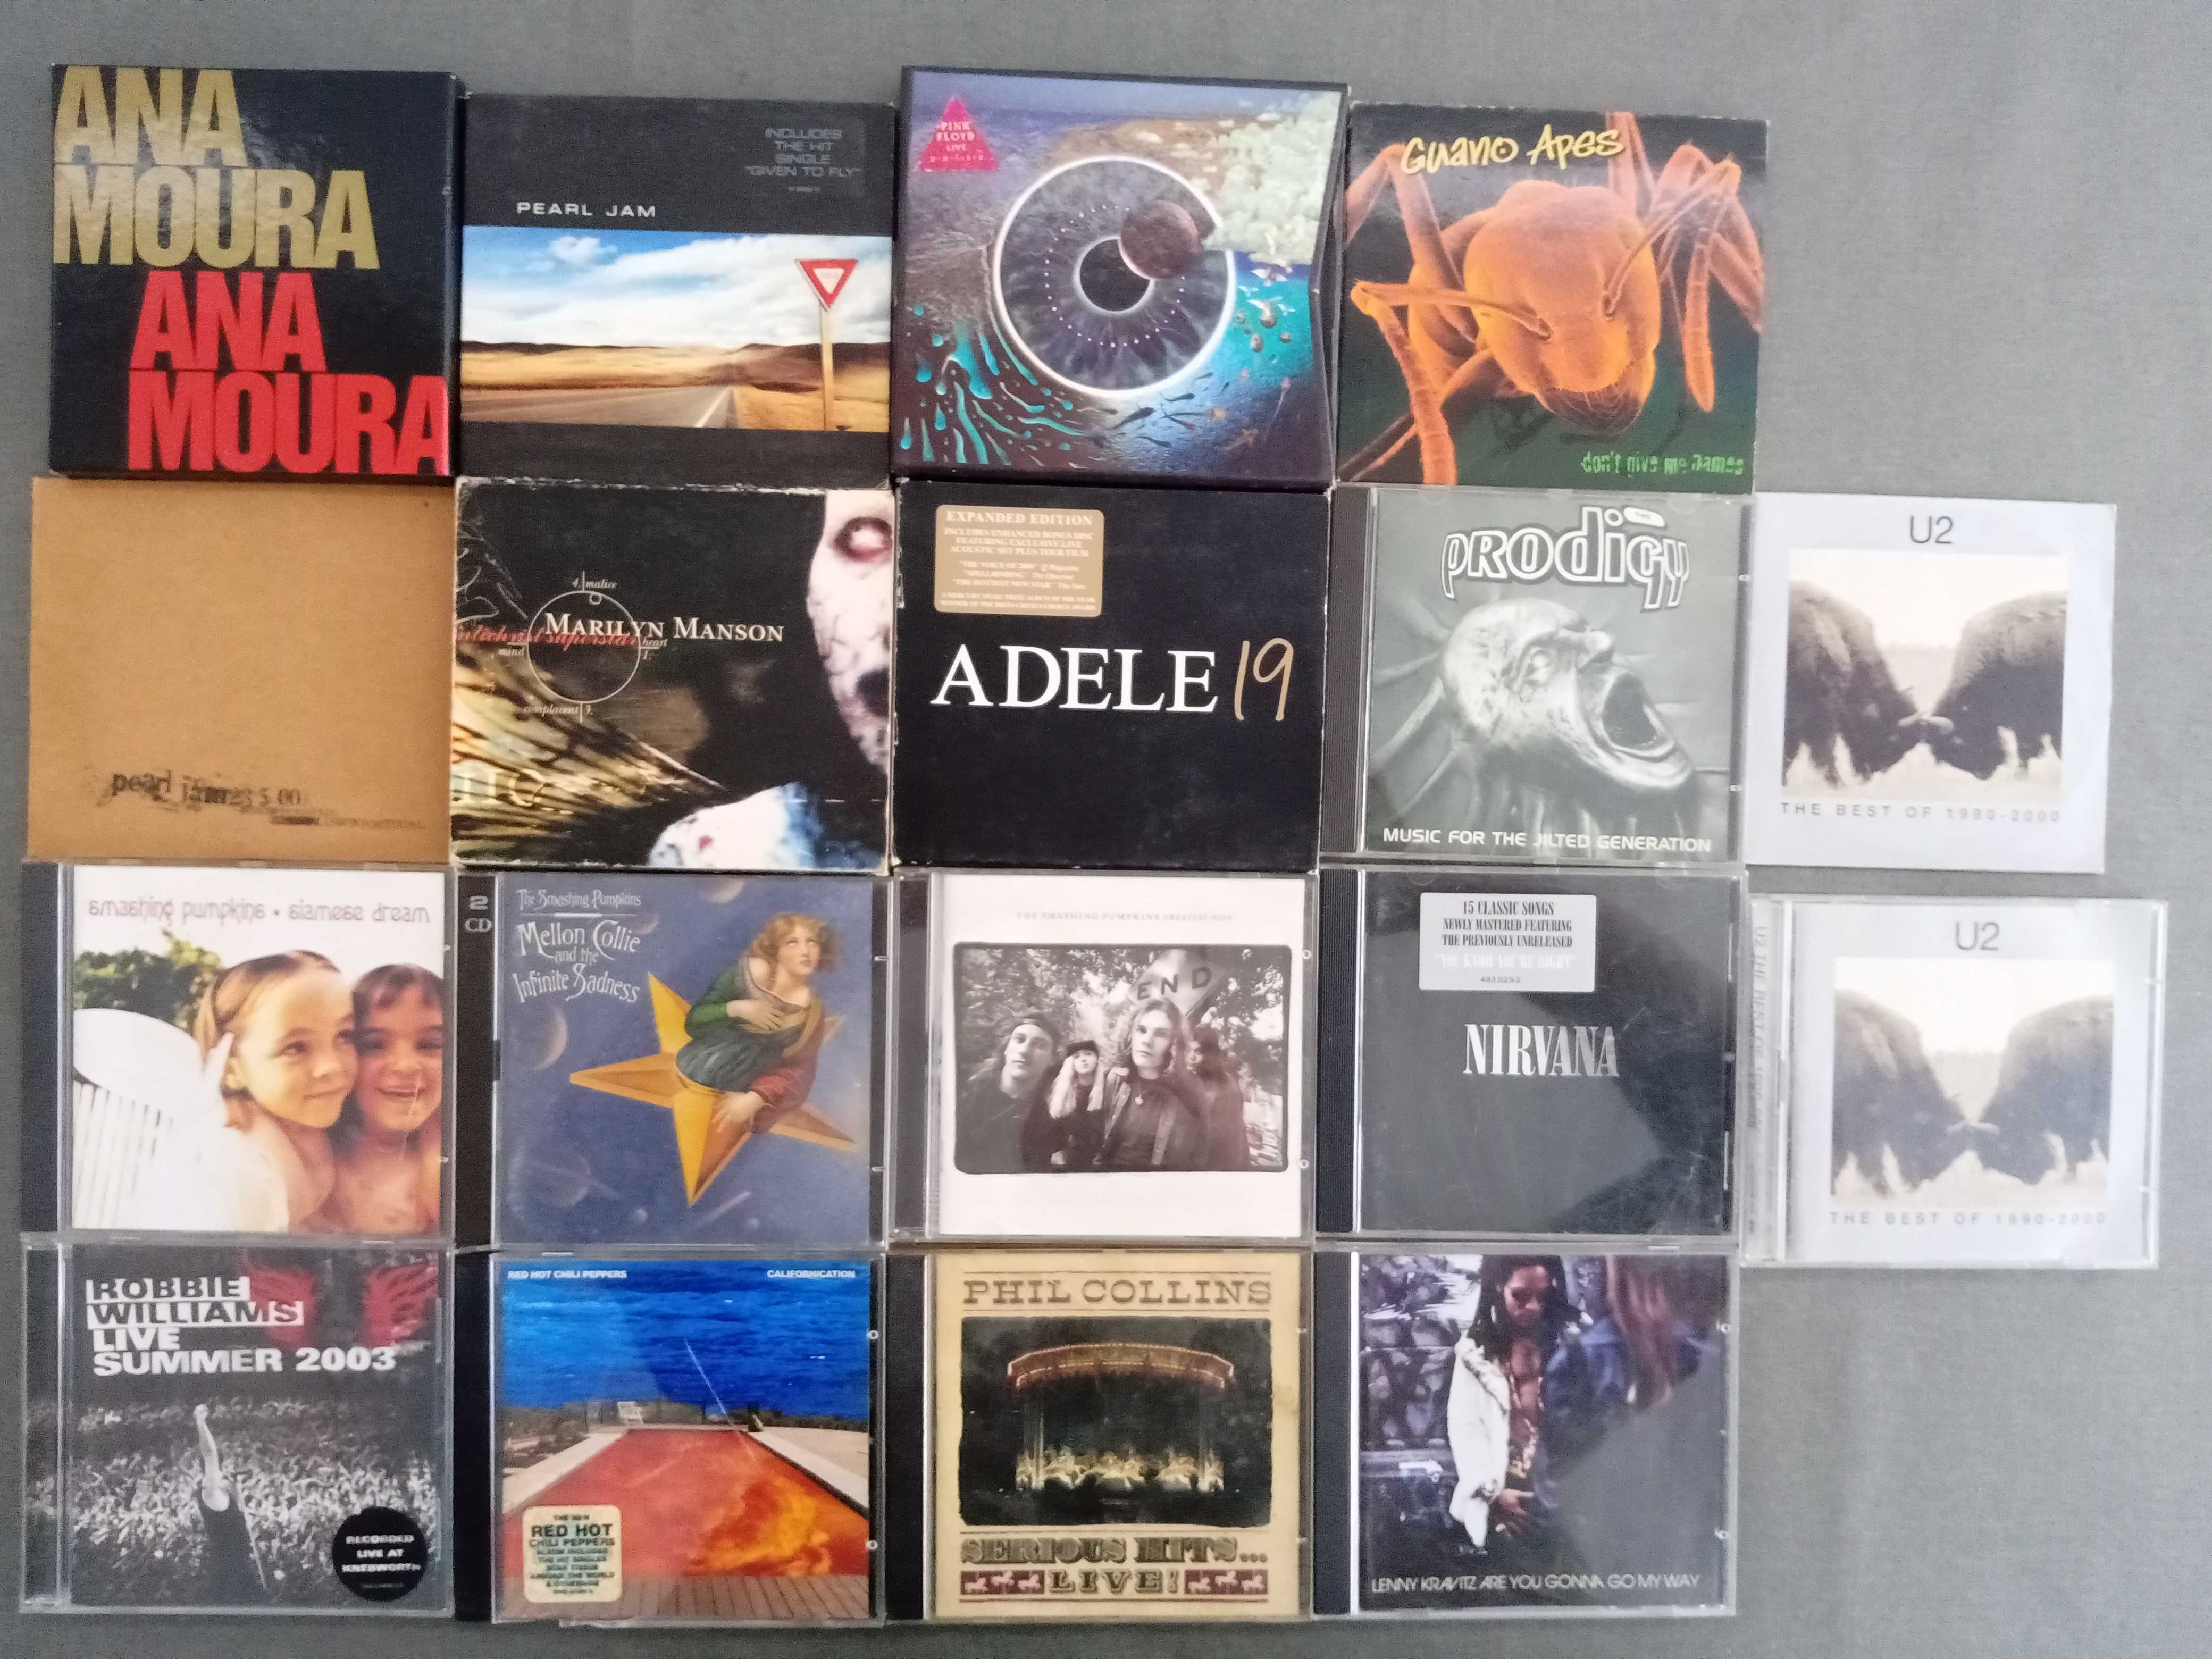 Dvs e cds - musica - varios artistas - jogo sims e p.c. - jogos ps5 Vila  Chã de Ourique • OLX Portugal